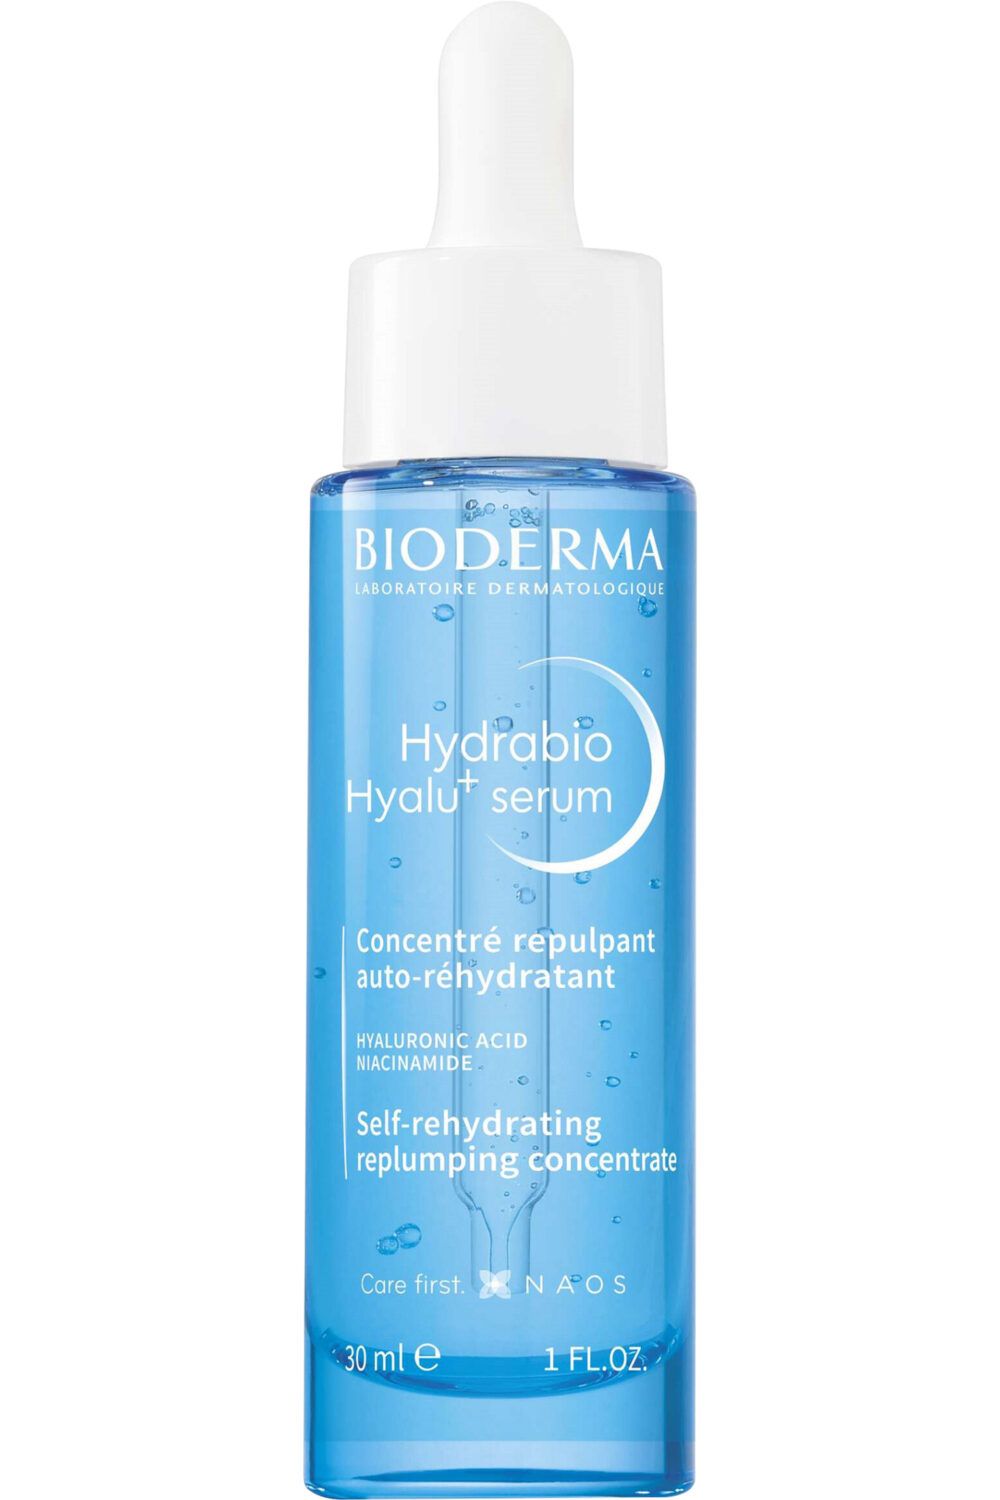 Bioderma - Concentré repulpant auto-réhydratant Hydrabio Hyalu+